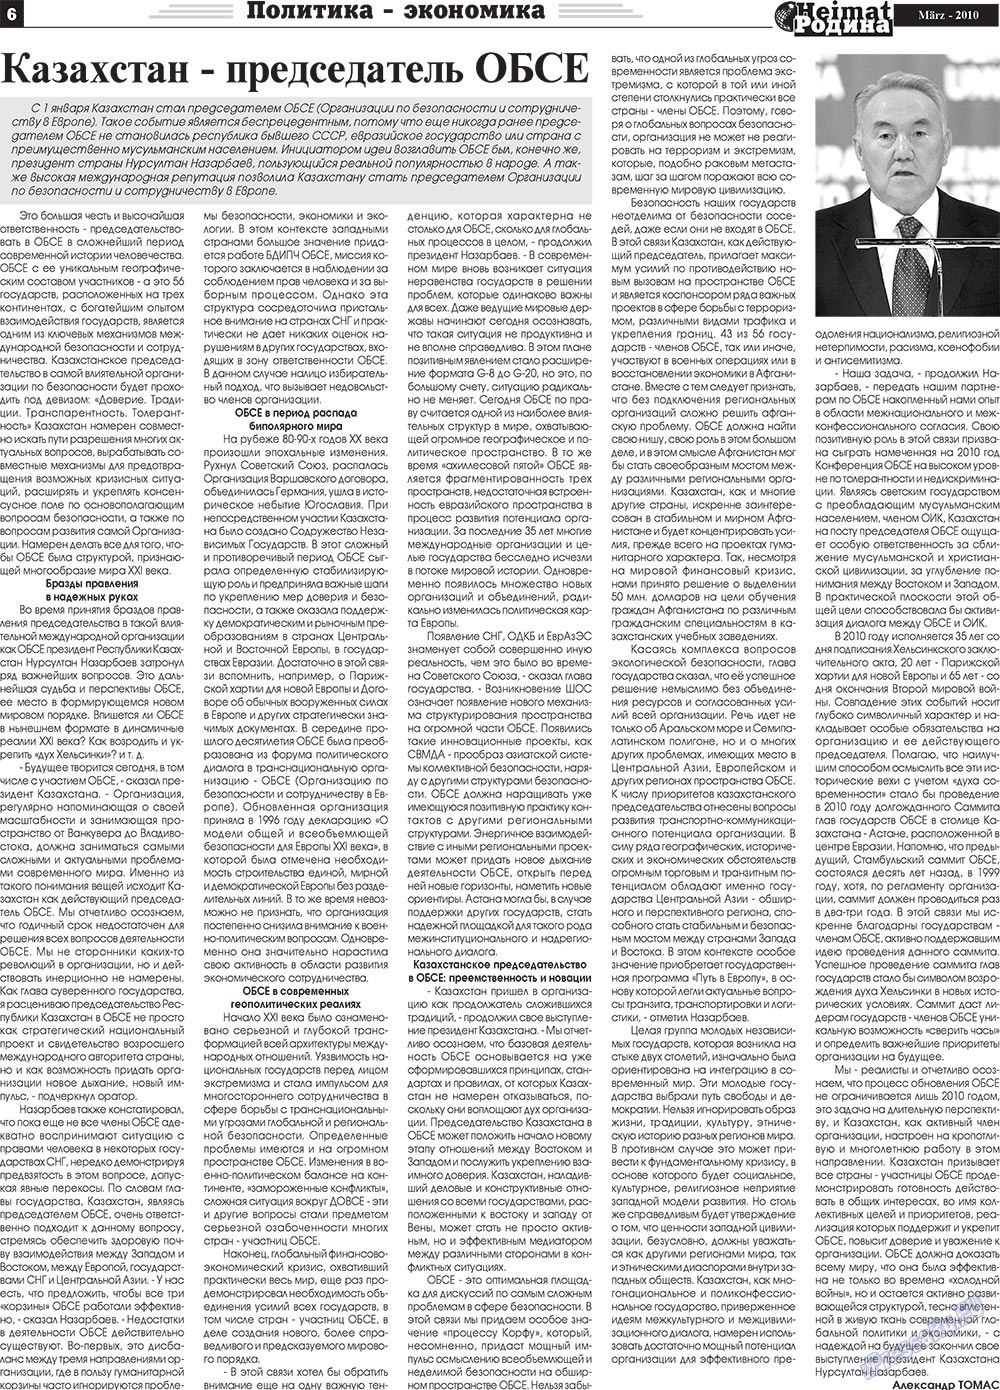 Heimat-Родина (газета). 2010 год, номер 3, стр. 6